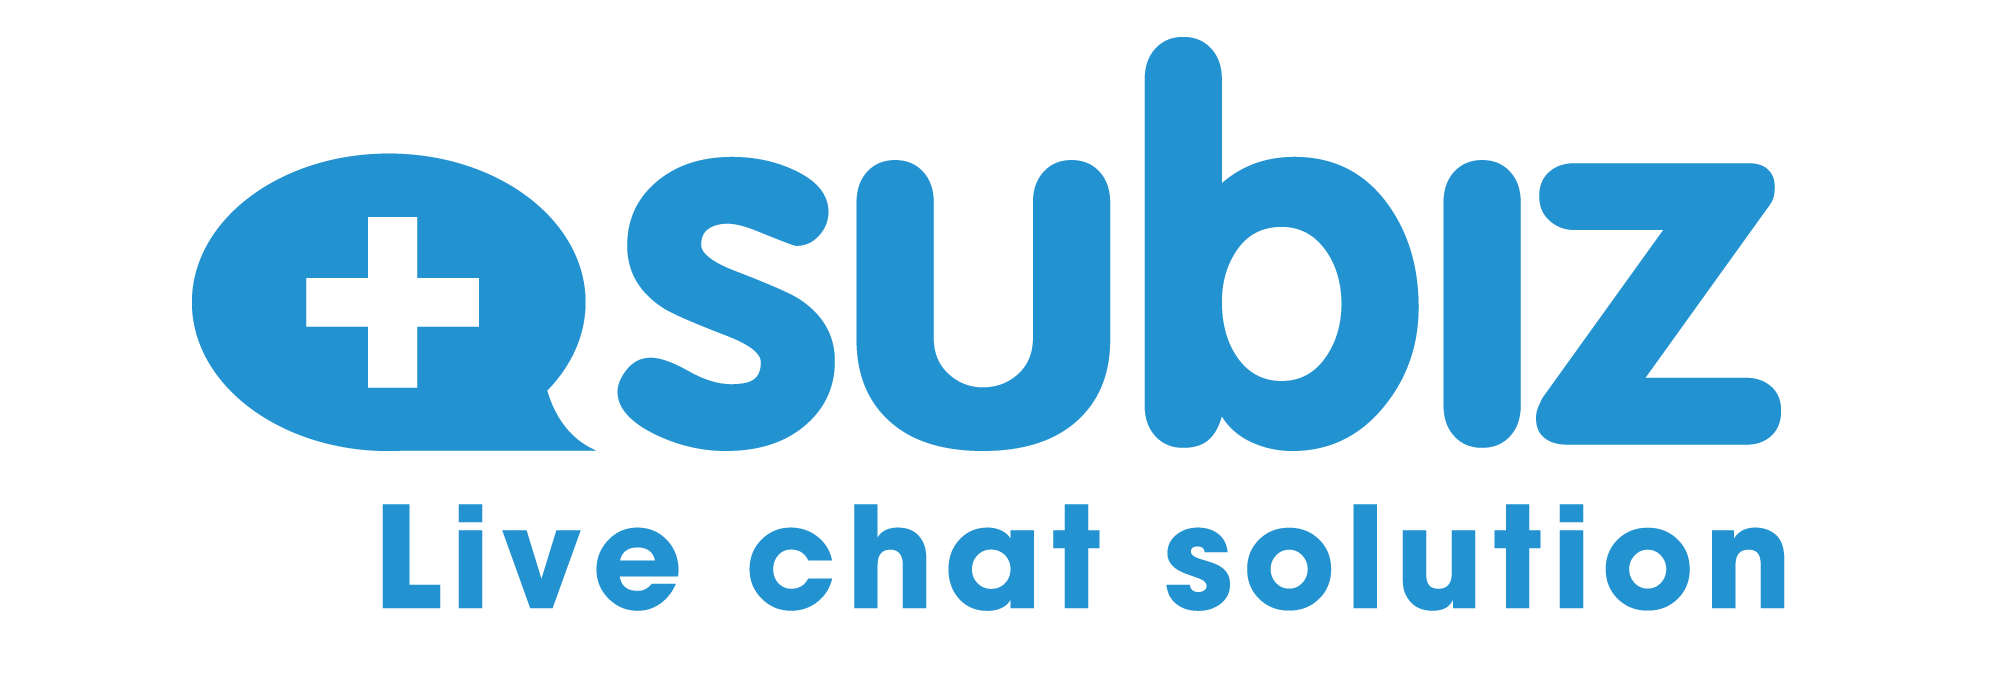 Hiện đang là phần mềm chat trực tuyến số 1 tại Việt Nam, Subiz nhận được sự tin tưởng từ rất nhiều người dùng trong và ngoài nước.